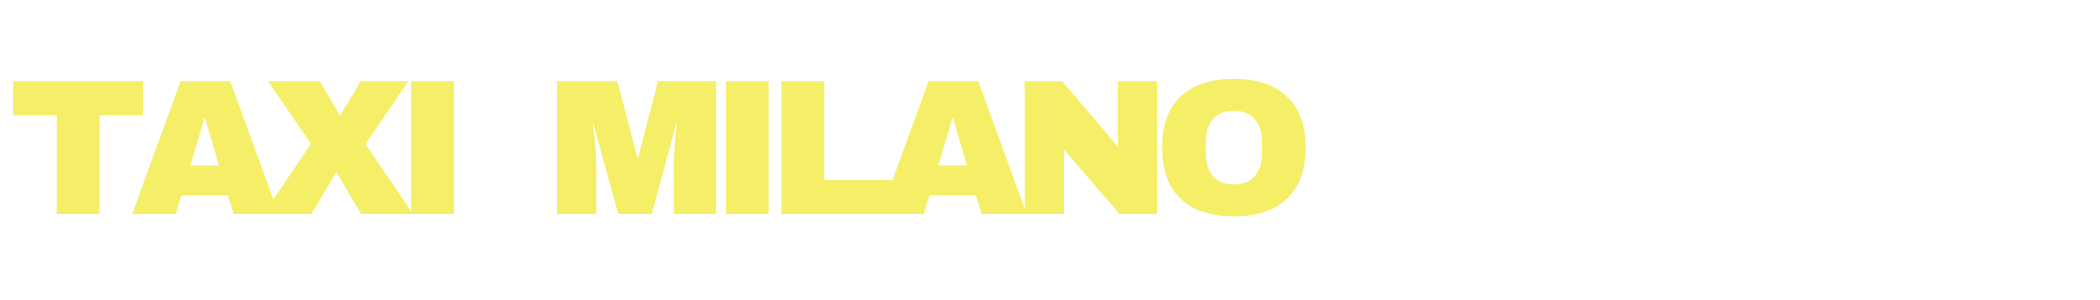 Taxi Milano Logo